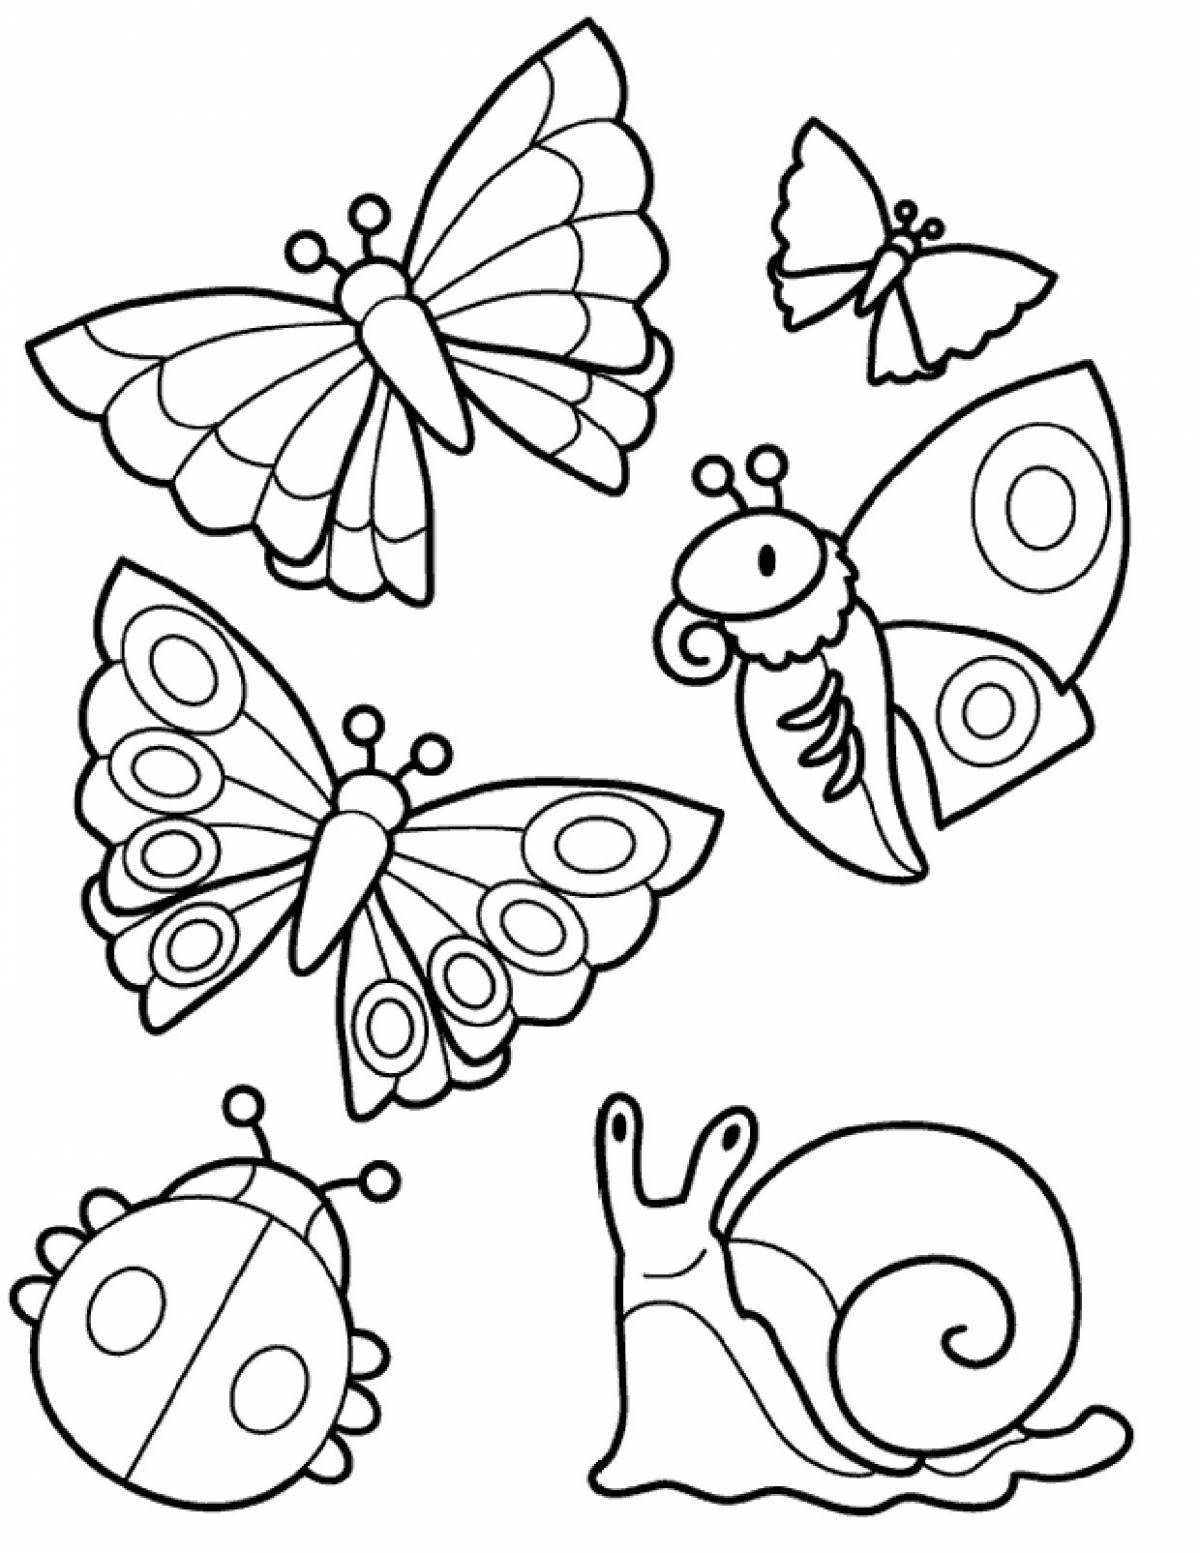 Игривая страница раскраски насекомых для детей 5-6 лет